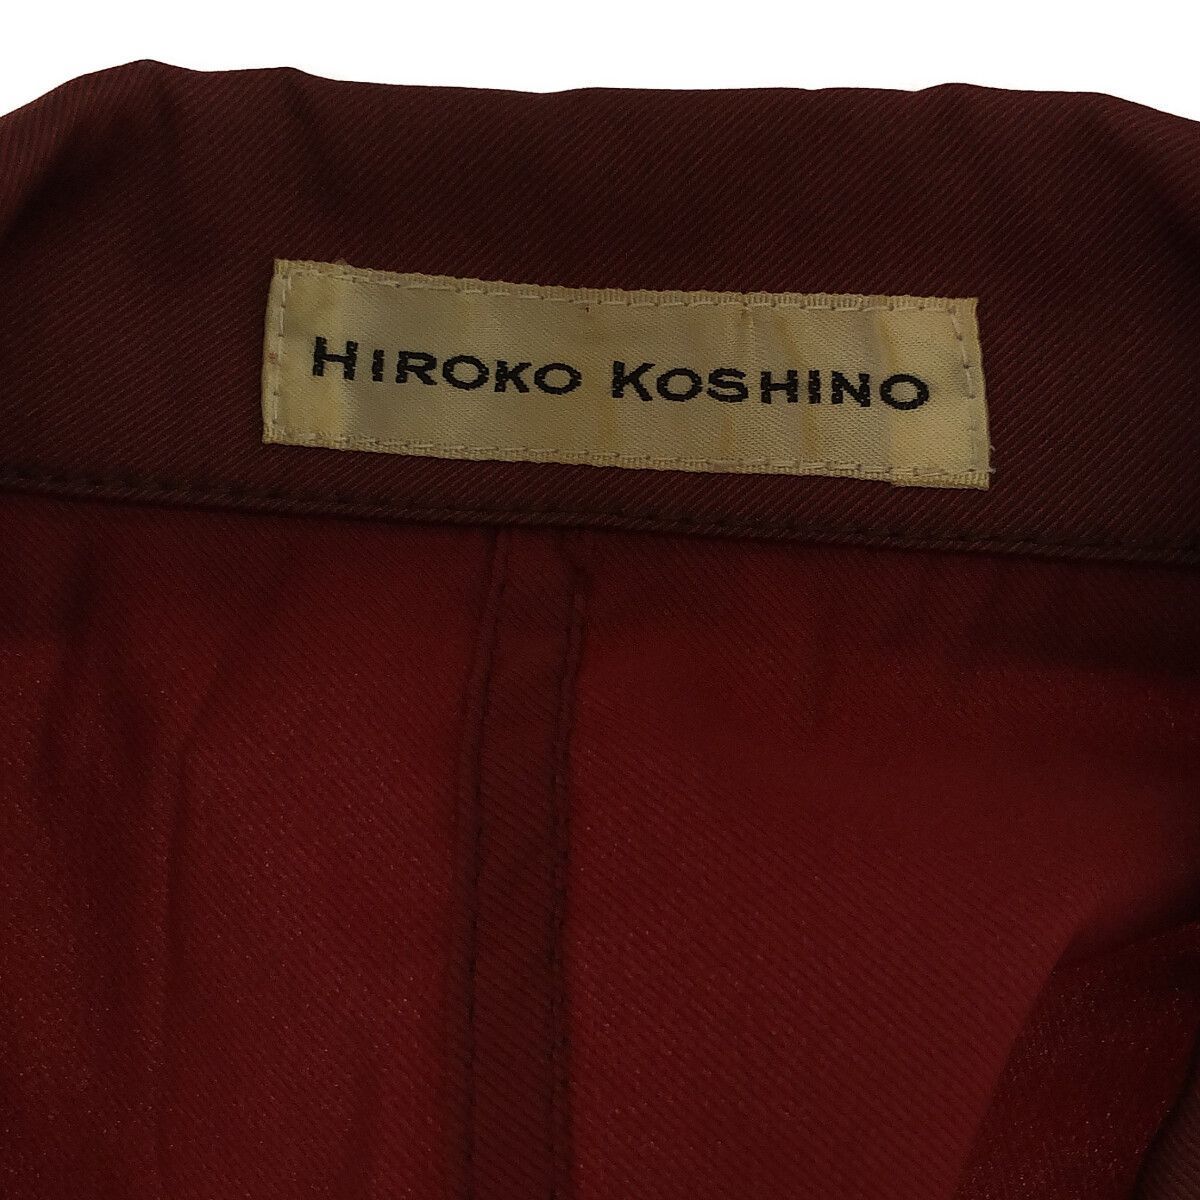 HIROKO KOSHINO ジャケット アウター長袖 レディース レッド 11 901-271 送料無料_画像5